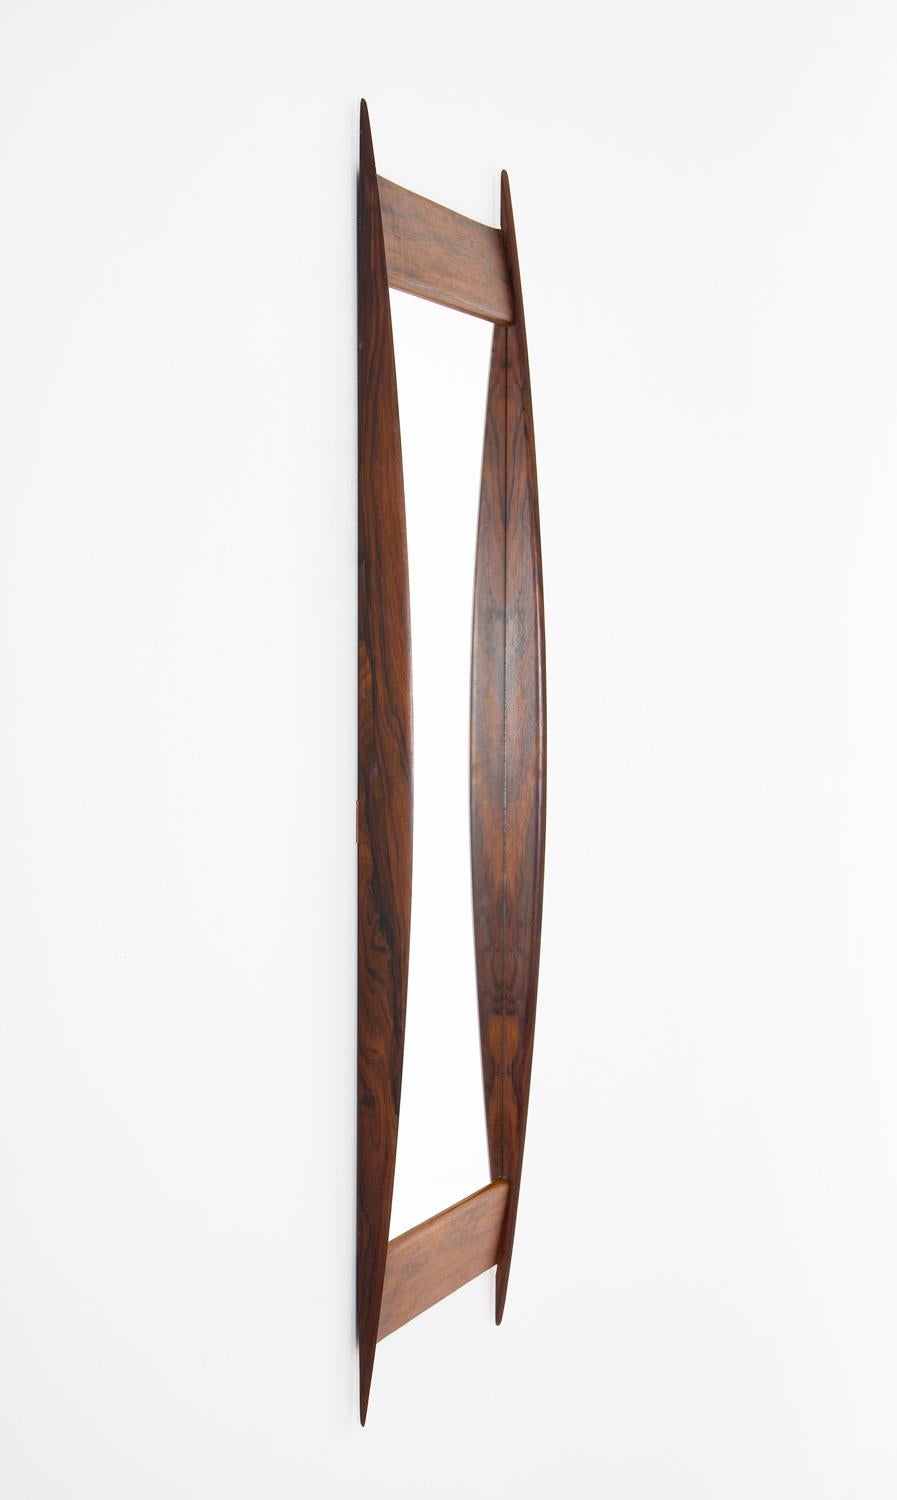 Rechteckiger Spiegel Nr. 7075 aus Palisanderholz, zugeschrieben Rimbert Sandholt für Glas & Trä, Schweden.
Dieser Spiegel ist von hoher Qualität in der Konstruktion und hat einen schön geformten Rahmen.

Zustand: Sehr guter alter Zustand. Das